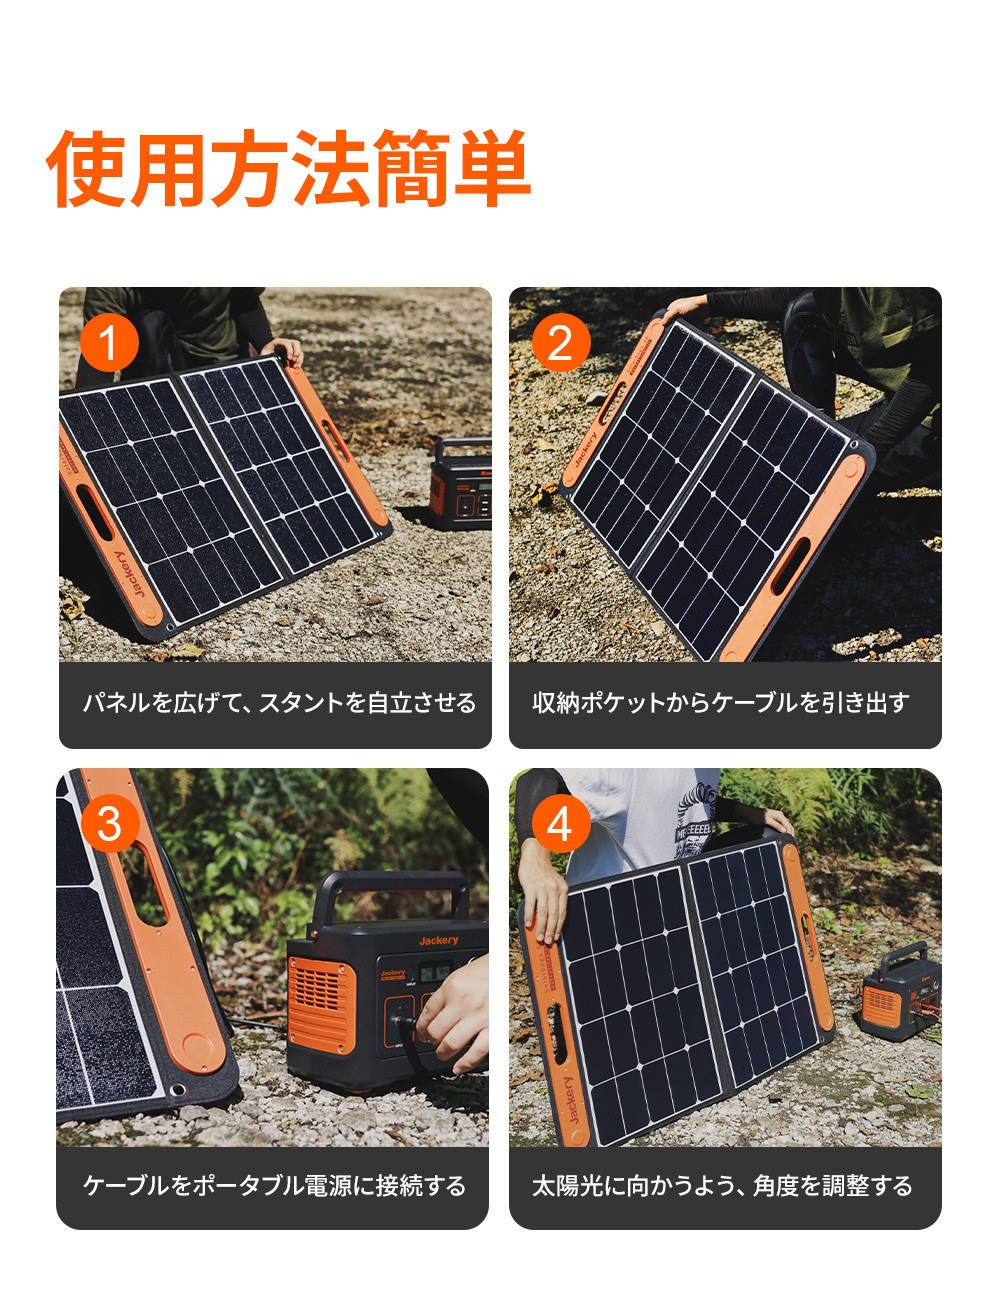 Jackery SolarSaga 60 ソーラーパネル 68W ETFE ソーラーチャージャー 折りたたみ式 USB出力 高変換効率 23% 超薄型  軽量 コンパクト 単結晶 防災 防水 (68W 22V 3.09A) Jackery ポータブル電源240Wh推奨 | Jackery Japan  